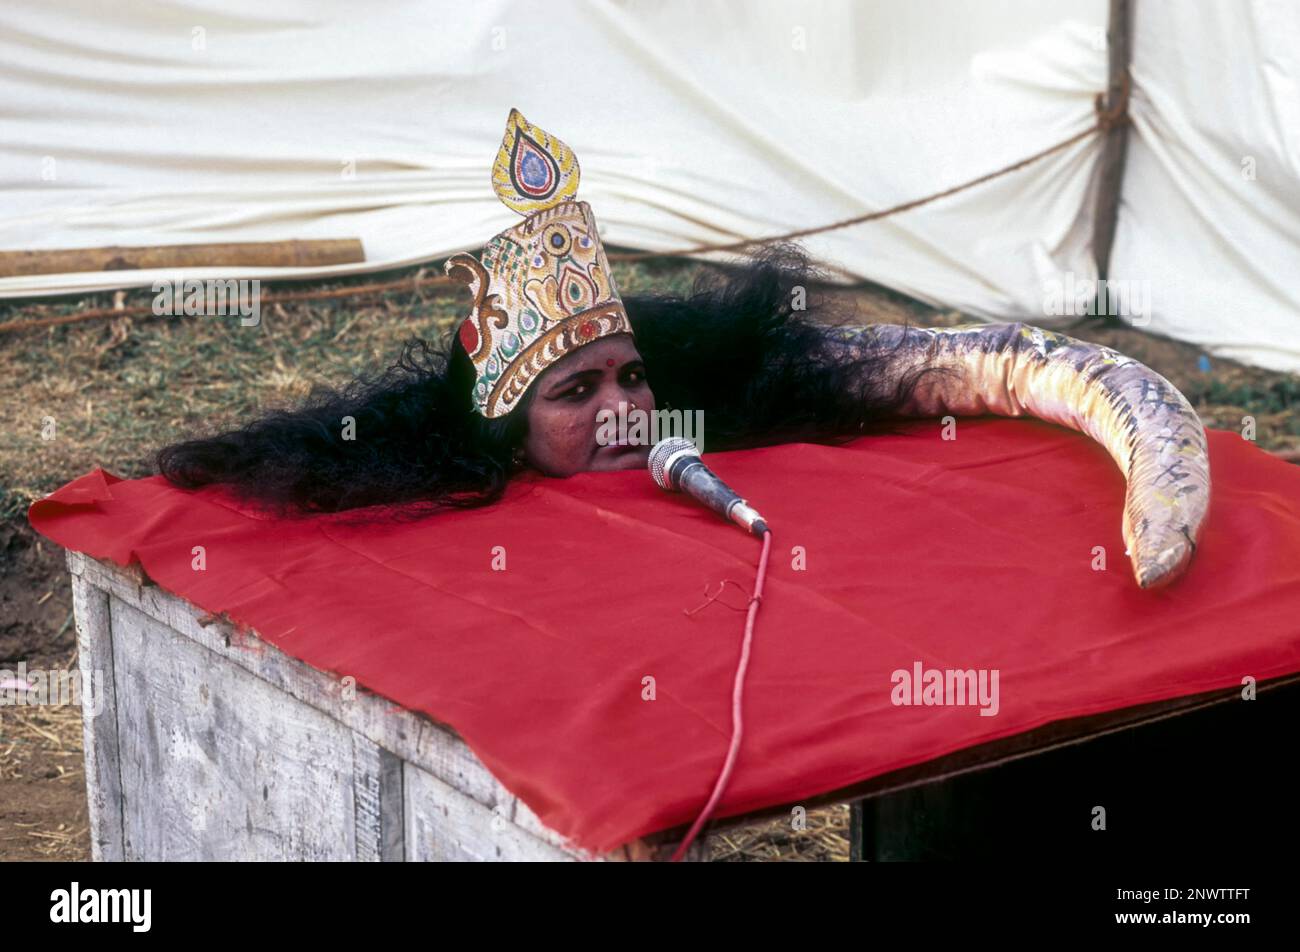 Une femme effectuant un spectacle magique comme serpent dans une exposition de village, kerala, Inde, Asie Banque D'Images